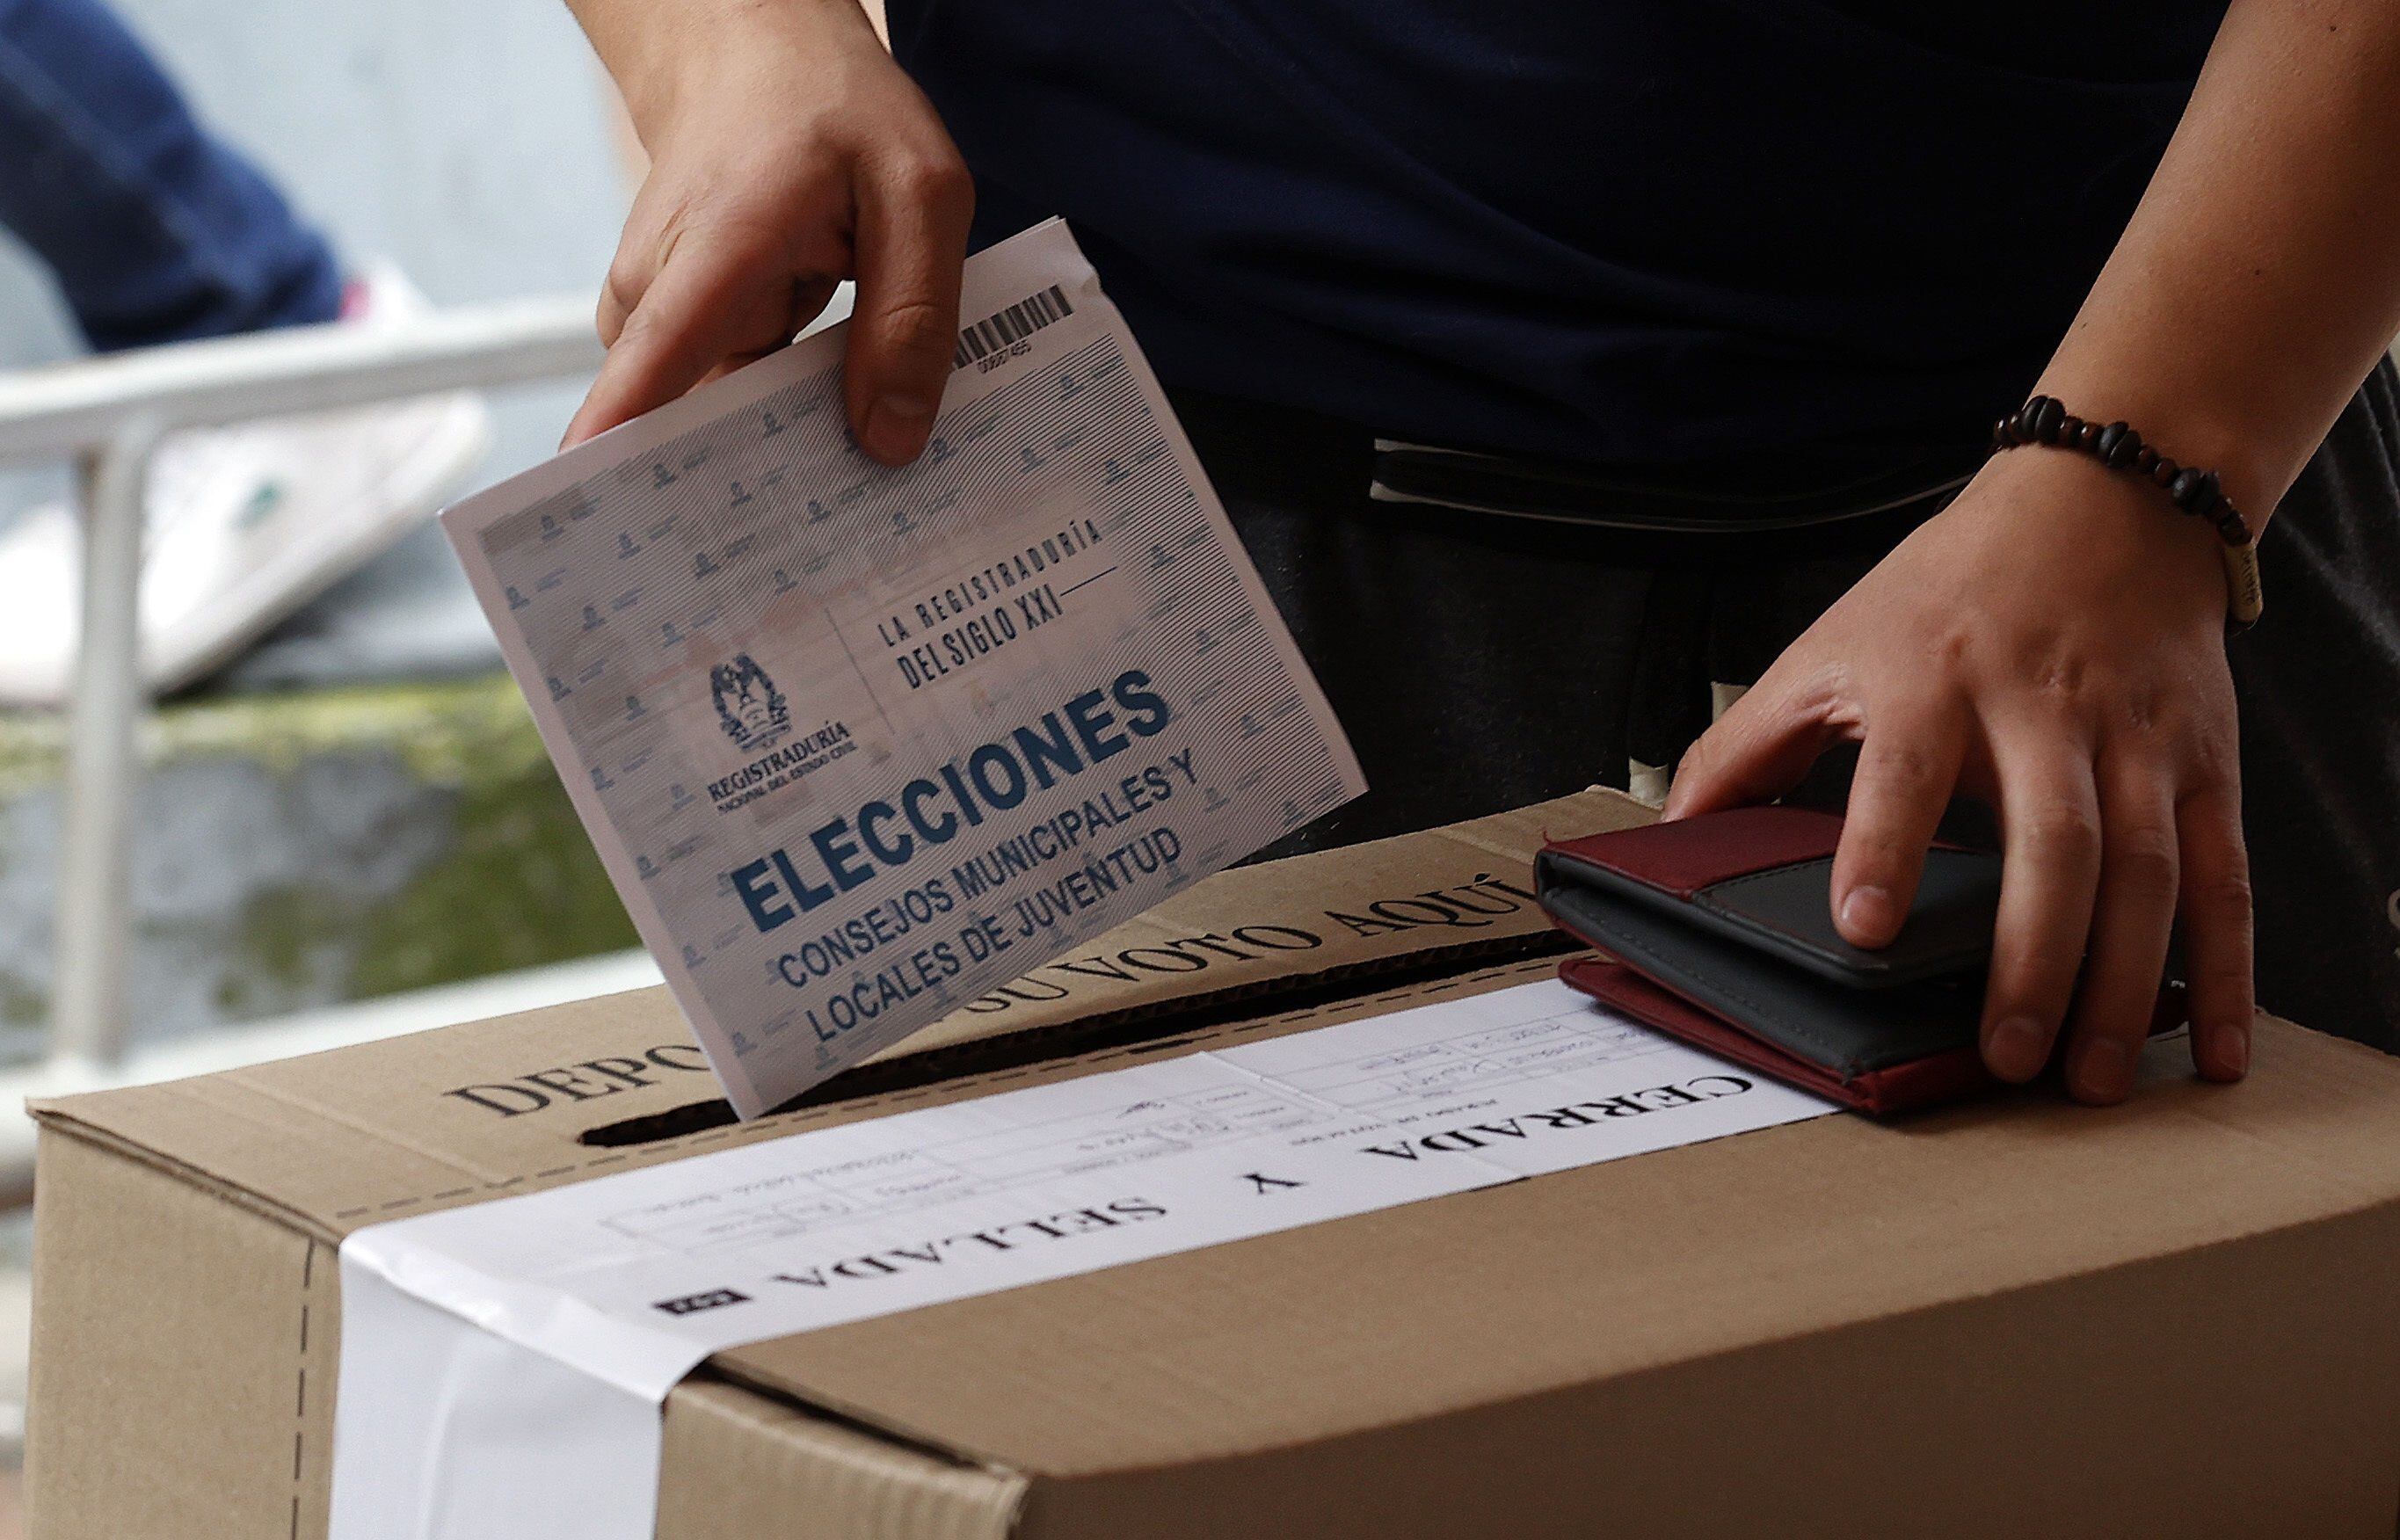 Elecciones regionales: Gobierno se pronunció sobre el ingreso de teléfonos móviles a las urnas - crédito Mauricio Dueñas Castañeda / EFE 